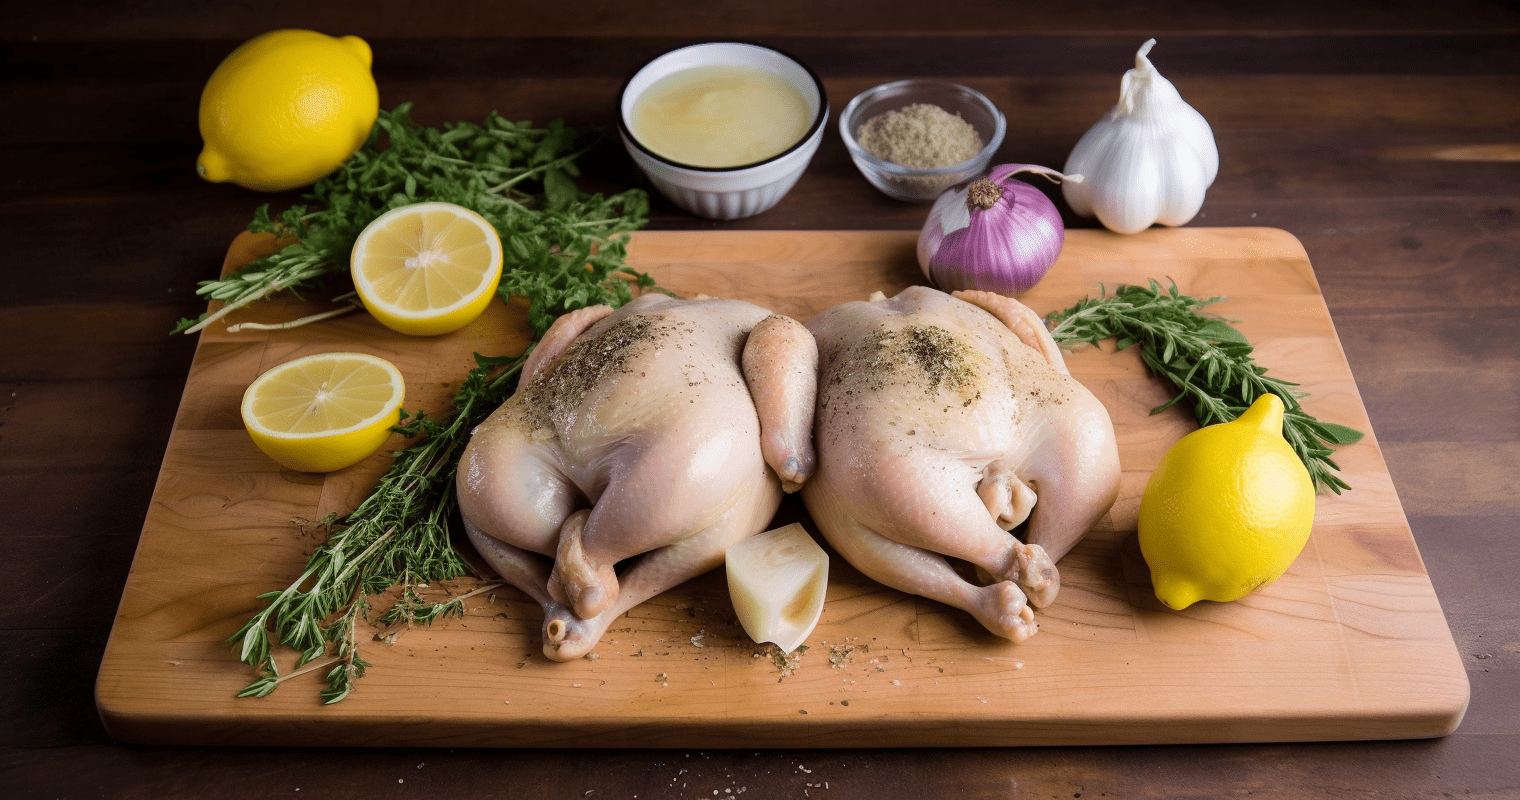 Lemon Herb Roasted Chicken Ingredients